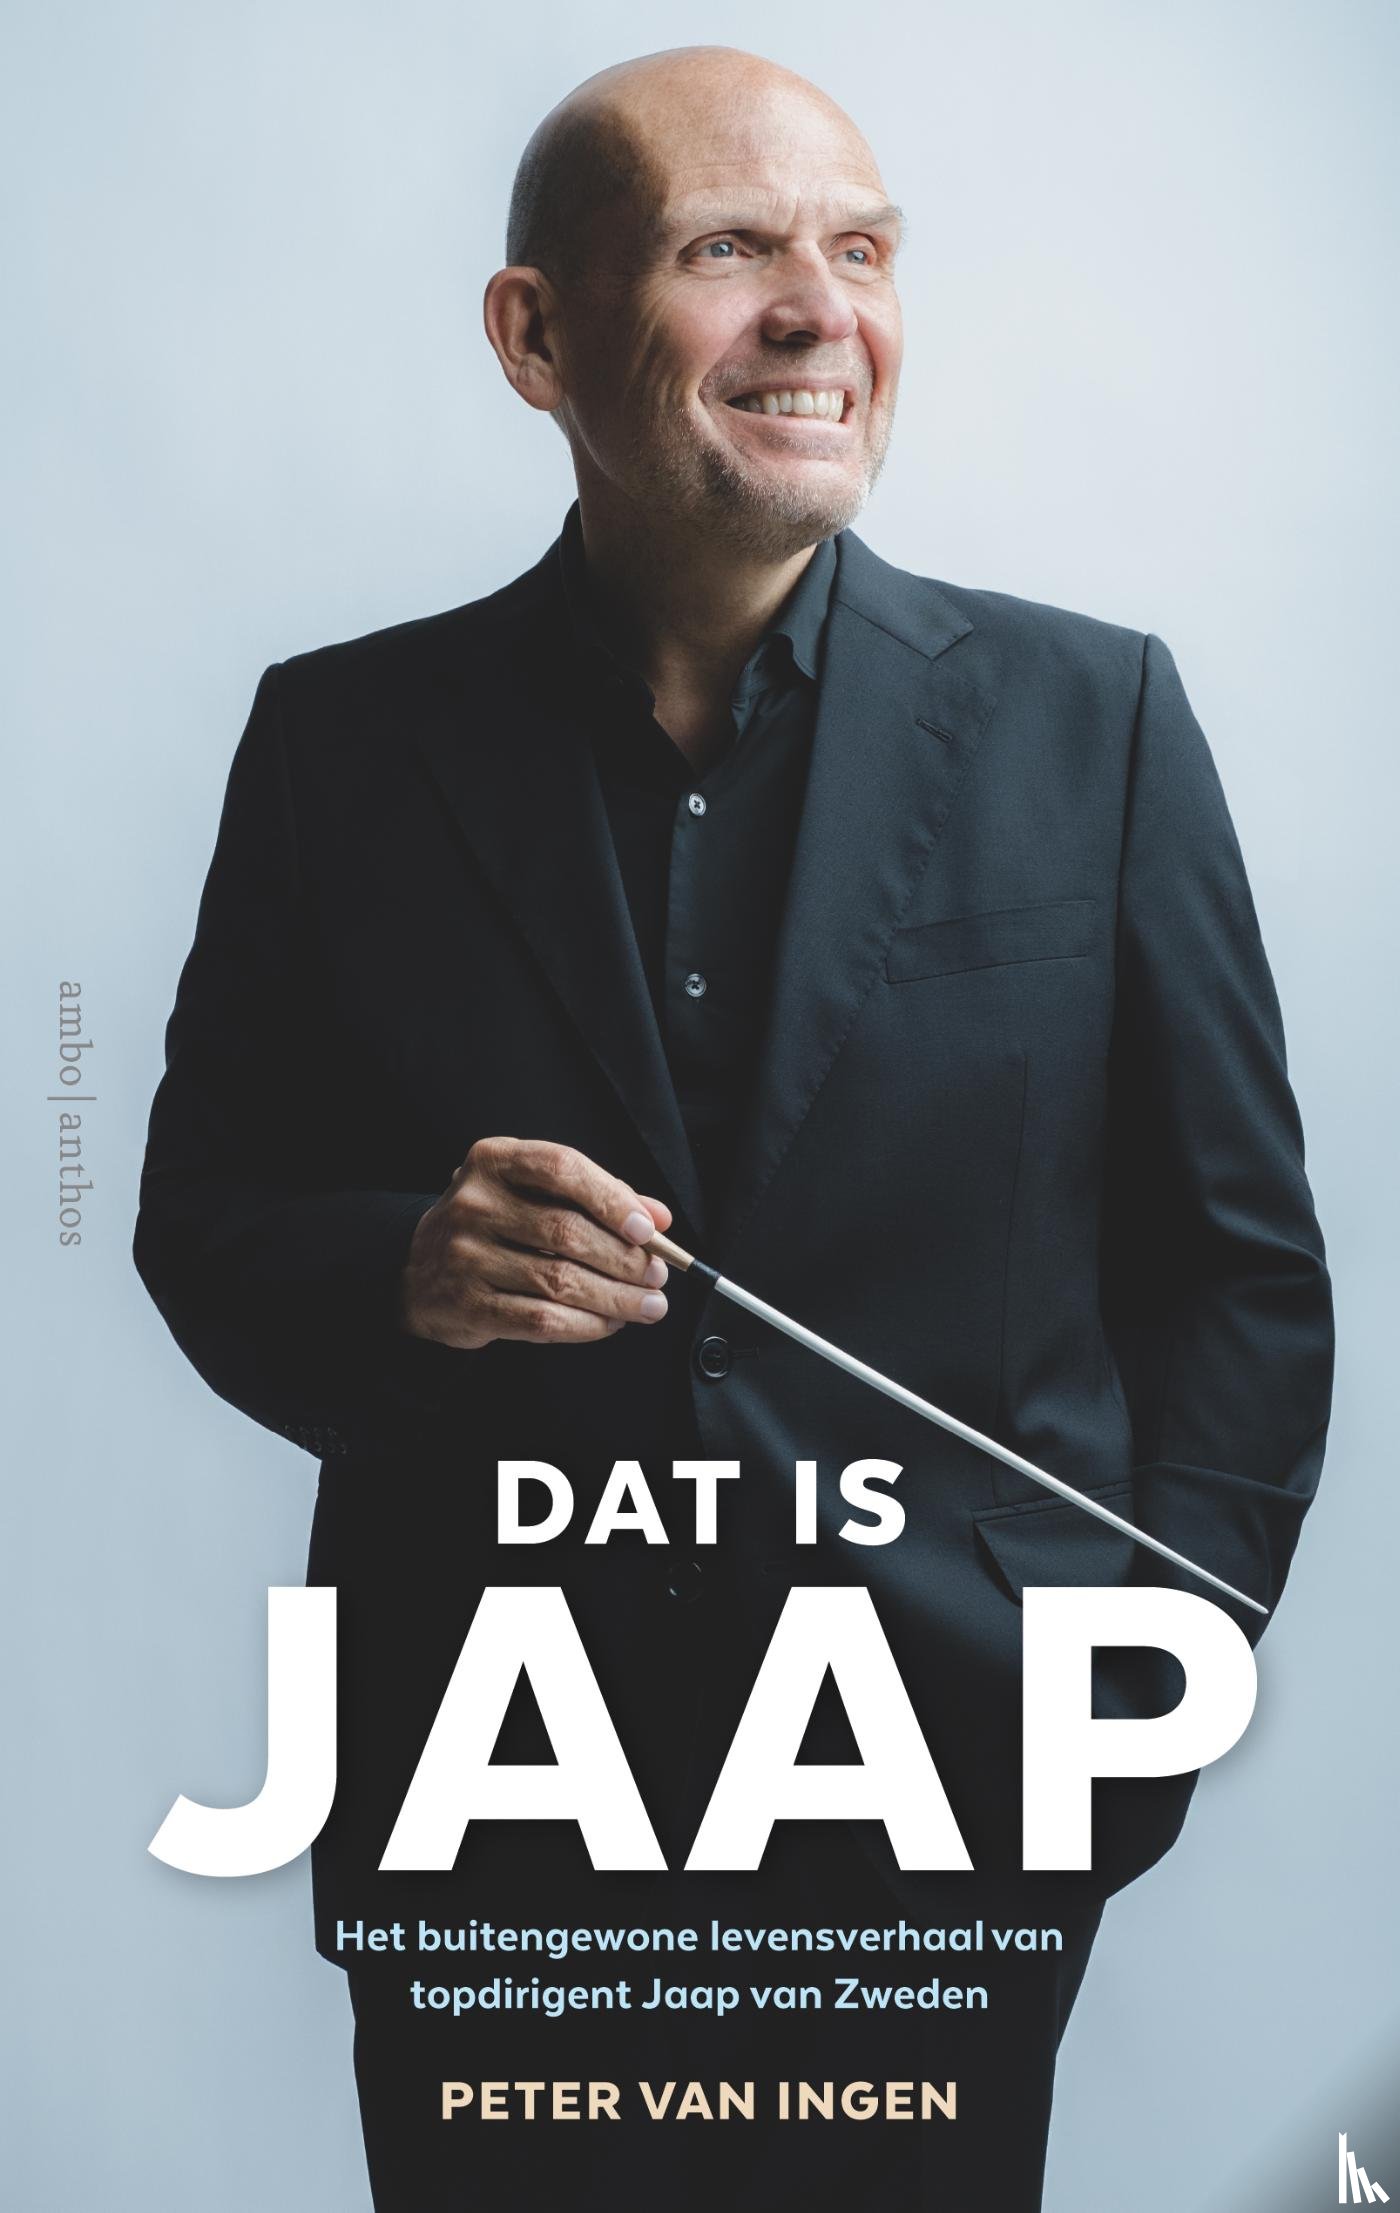 Ingen, Peter van - Dat is Jaap - Het buitengewone levensverhaal van topdirigent Jaap van Zweden